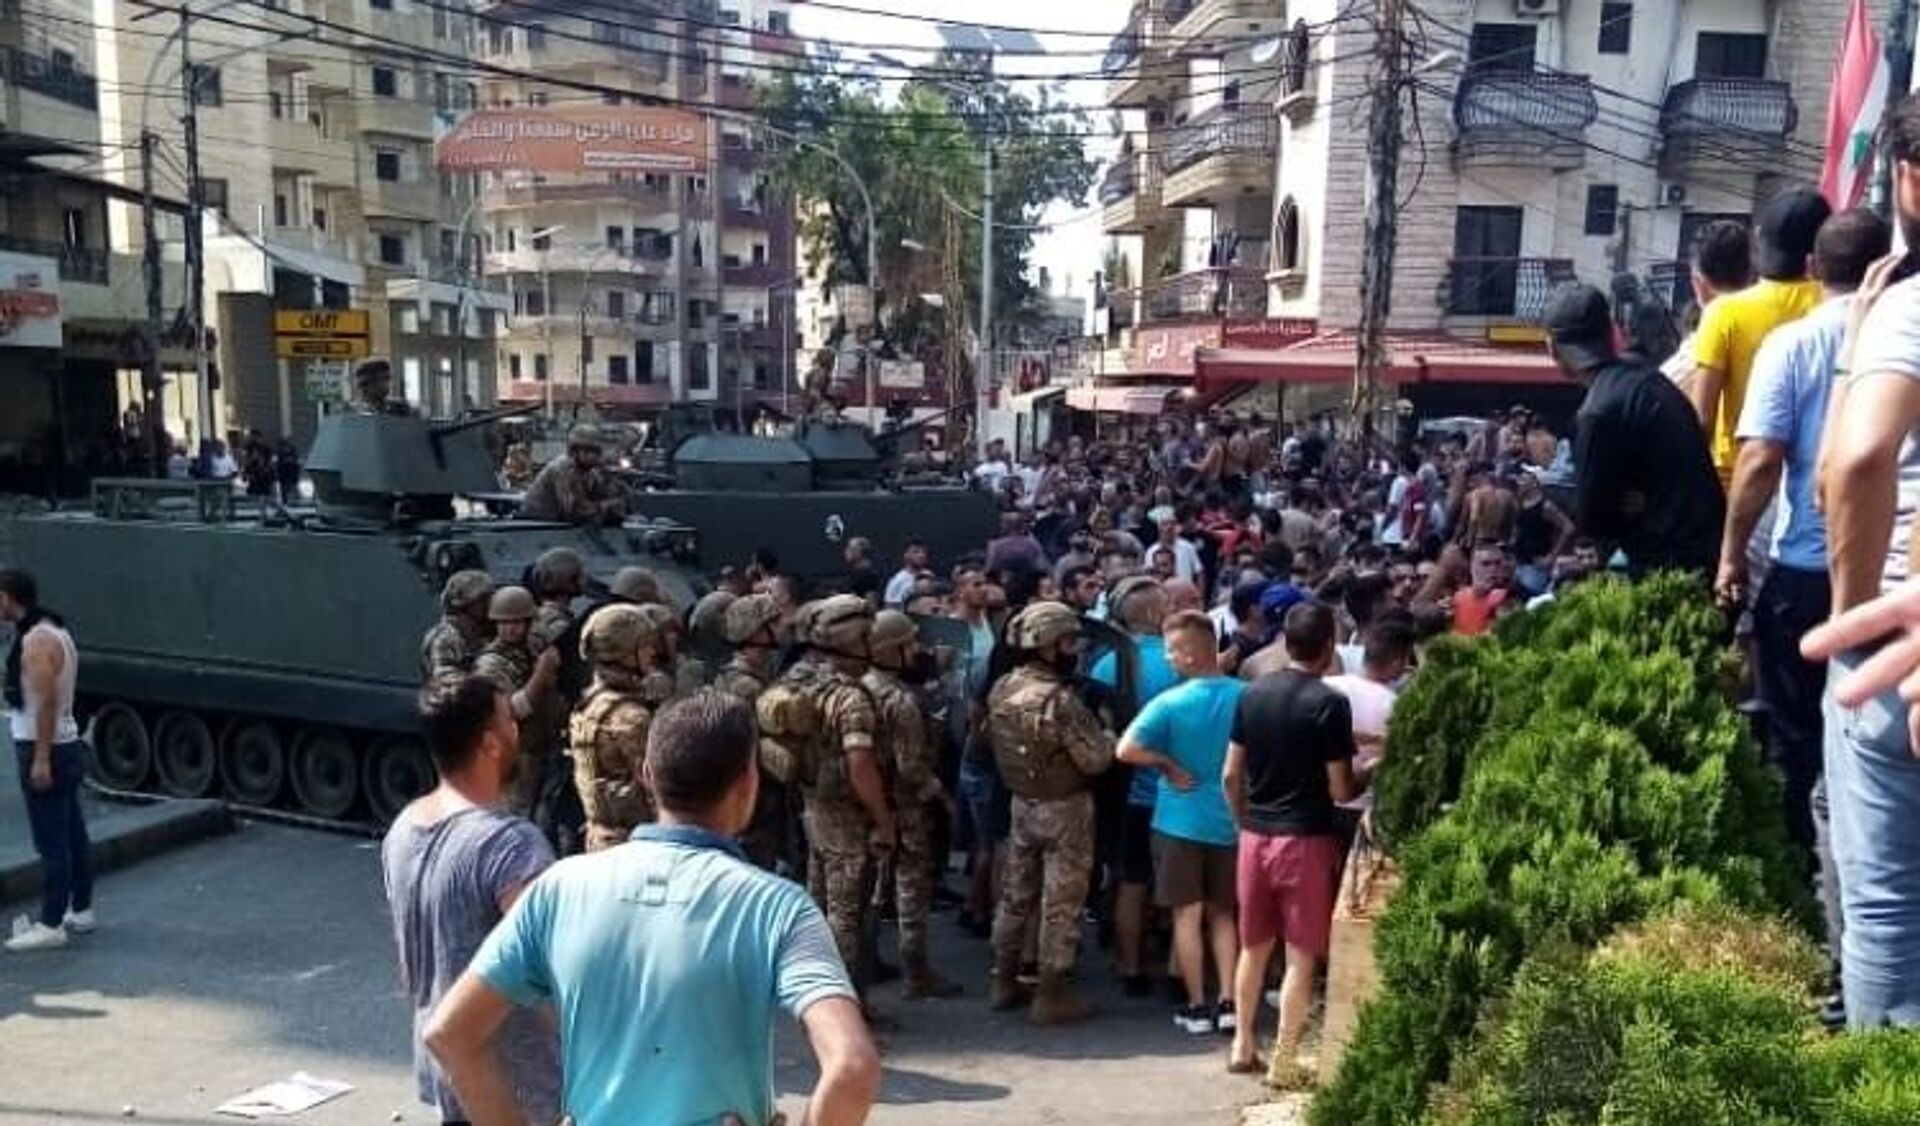 Lübnan’da Saad Hariri’nin hükümeti kurmayacağını açıklamasının ardından başlayan gösteriler devam ederken, Trablusşam kentinde çıkan çatışmada 25 kişi yaralandı. - Sputnik Türkiye, 1920, 16.07.2021